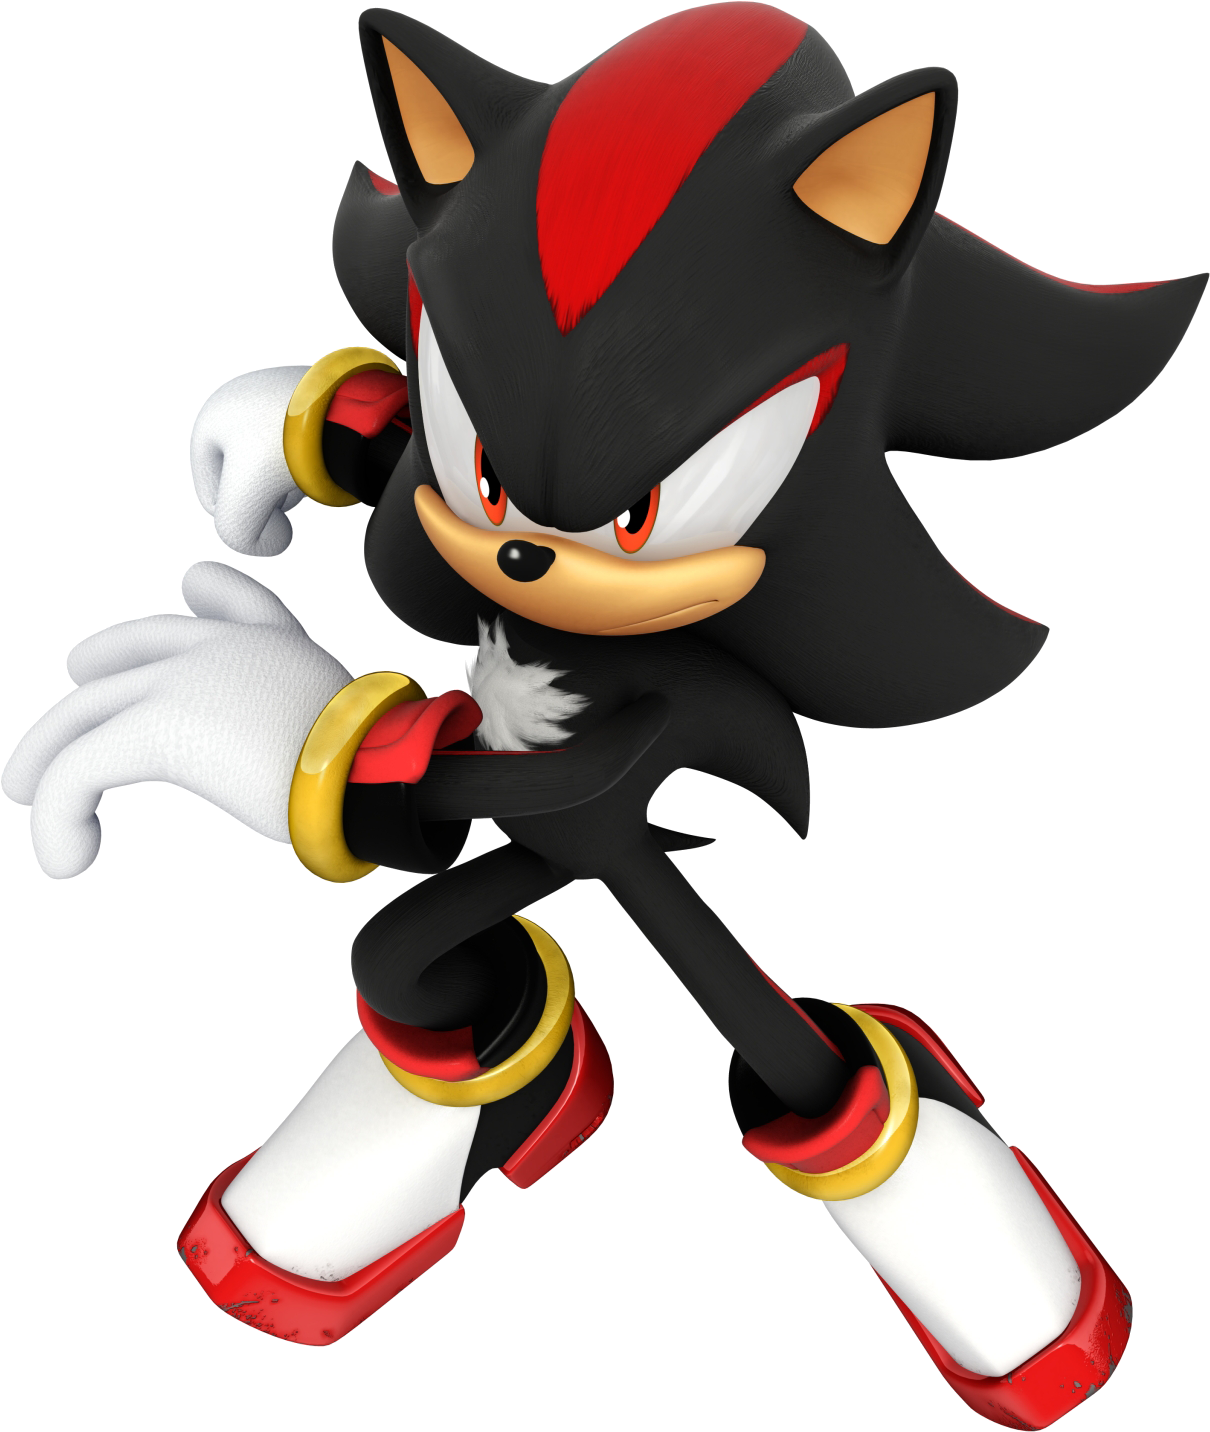 Shadow The Hedgehog By Strunton - Shadow Sonic The Hedgehog (1226x1448)